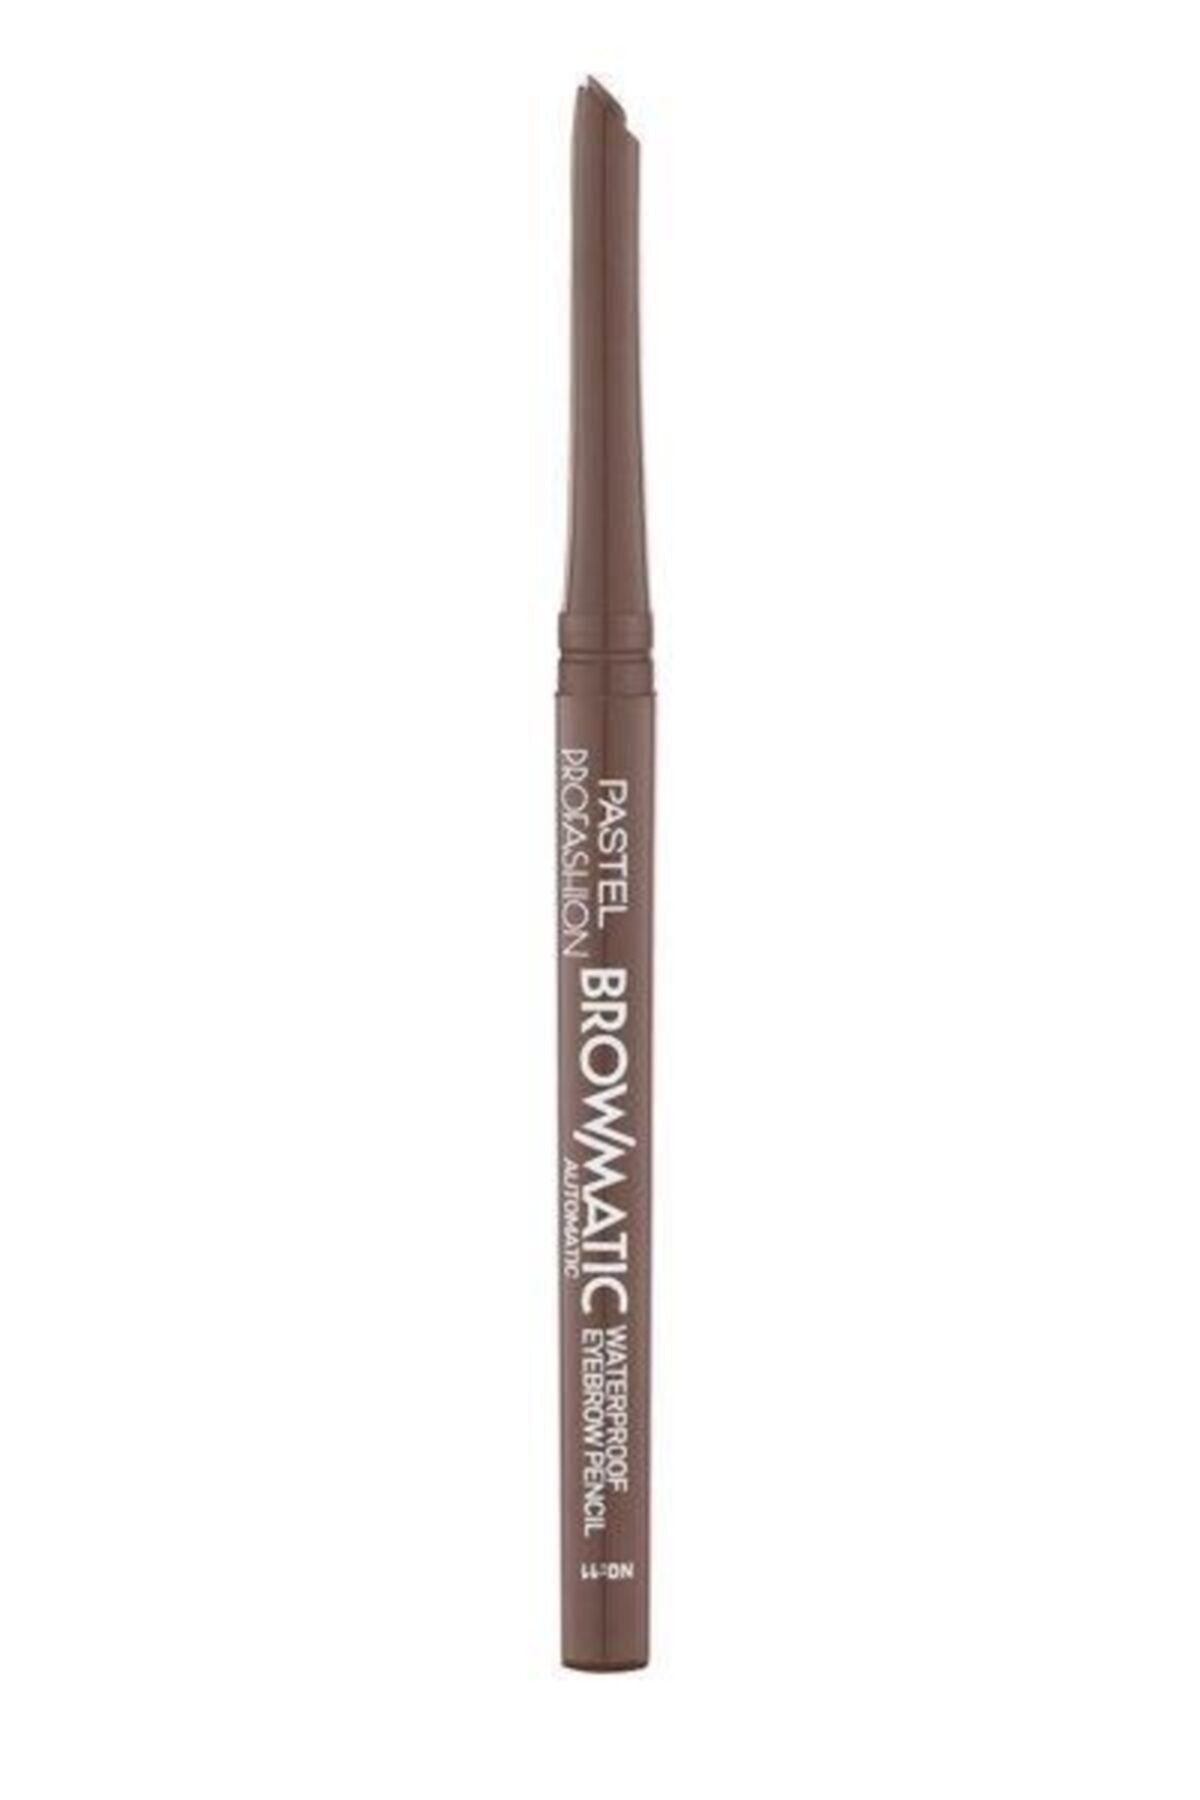 Pastel Browmatic Waterproof Eyebrow Pencil - 11